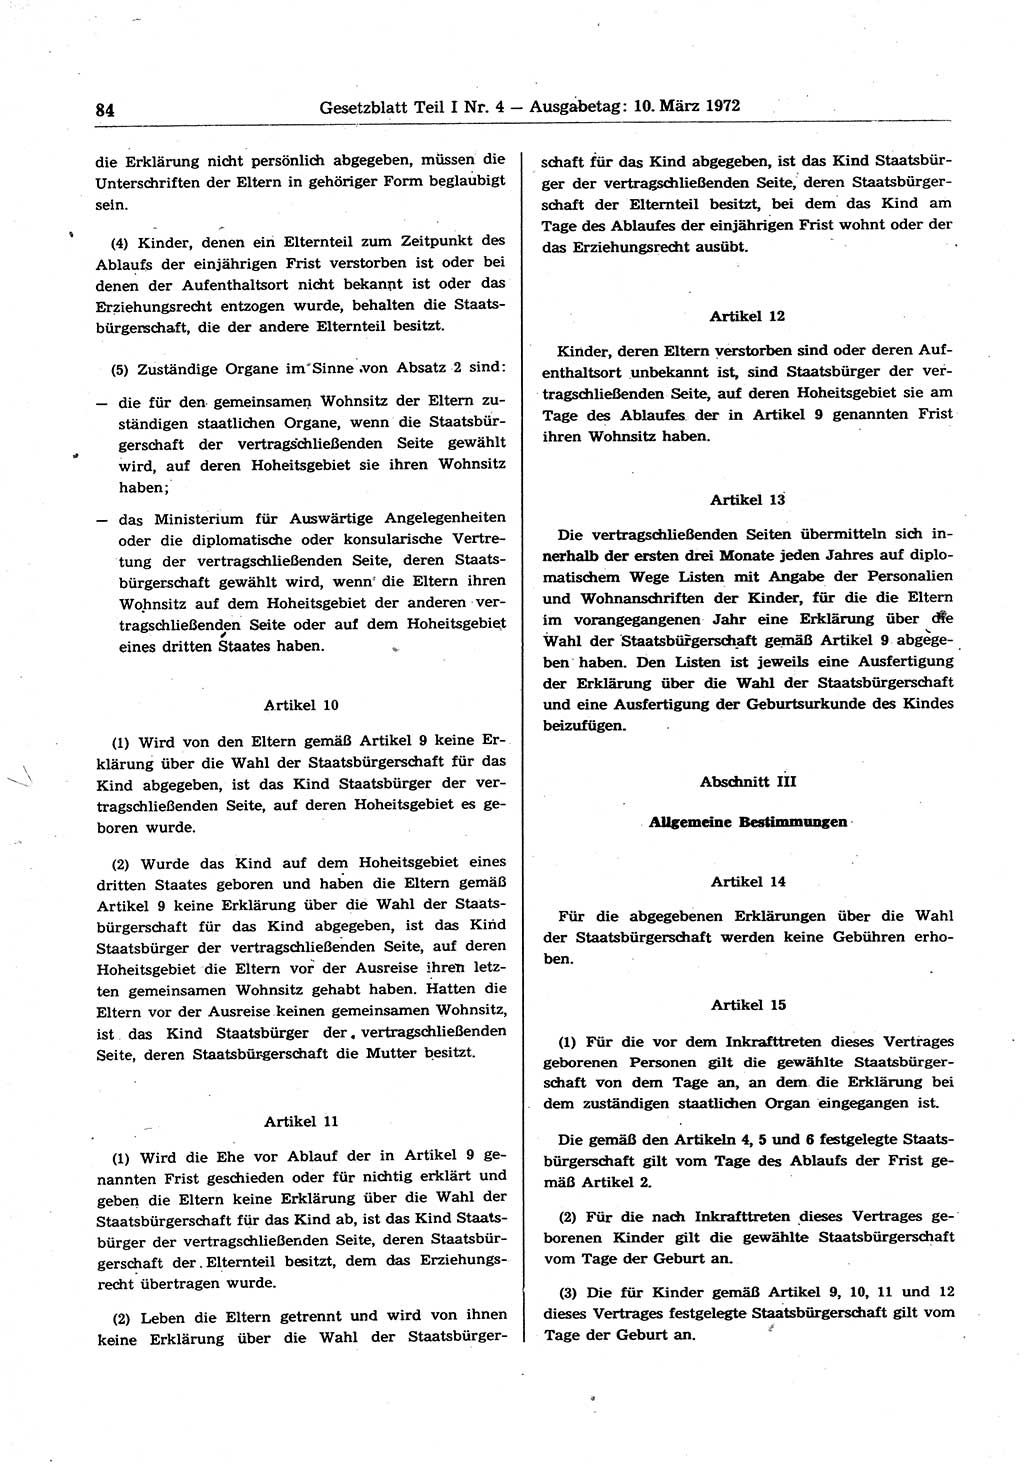 Gesetzblatt (GBl.) der Deutschen Demokratischen Republik (DDR) Teil Ⅰ 1972, Seite 84 (GBl. DDR Ⅰ 1972, S. 84)